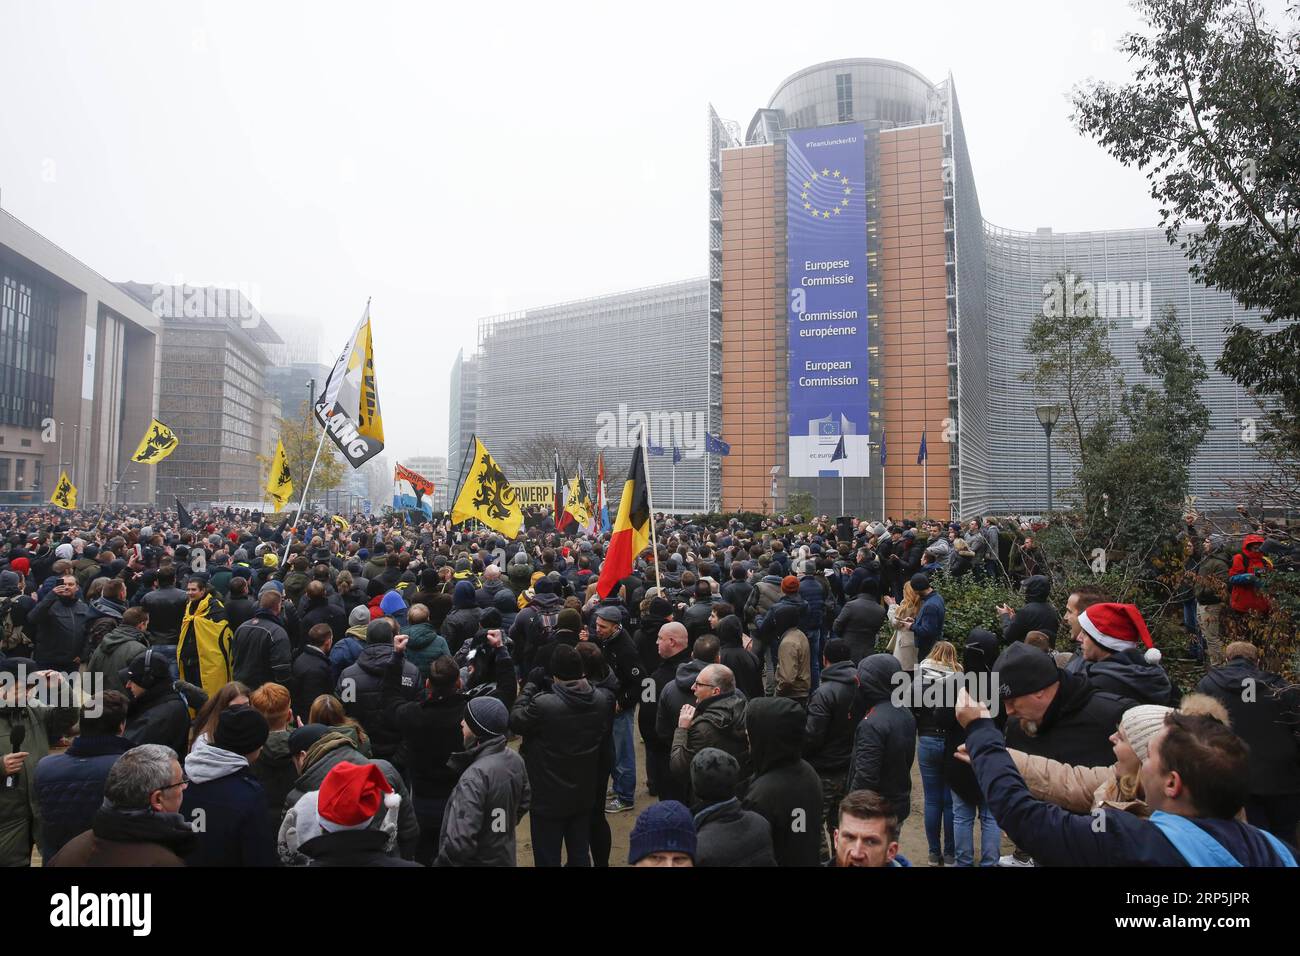 (181216) -- BRUXELLES, 16 dicembre 2018 -- i manifestanti di destra e di estrema destra partecipano alla manifestazione March Against Marrakech davanti alla sede centrale delle istituzioni dell'Unione europea a Bruxelles, in Belgio, 16 dicembre 2018. I manifestanti belgi anti-immigrazione sono scesi per le strade di Bruxelles qui domenica per denunciare il Global Compact per una migrazione sicura, ordinata e regolare adottato a Marrakech, in Marocco. ) BELGIO-BRUXELLES-ANTI-IMMIGRAZIONE-RALLY-PROTESTA YEXPINGFAN PUBLICATIONXNOTXINXCHN Foto Stock